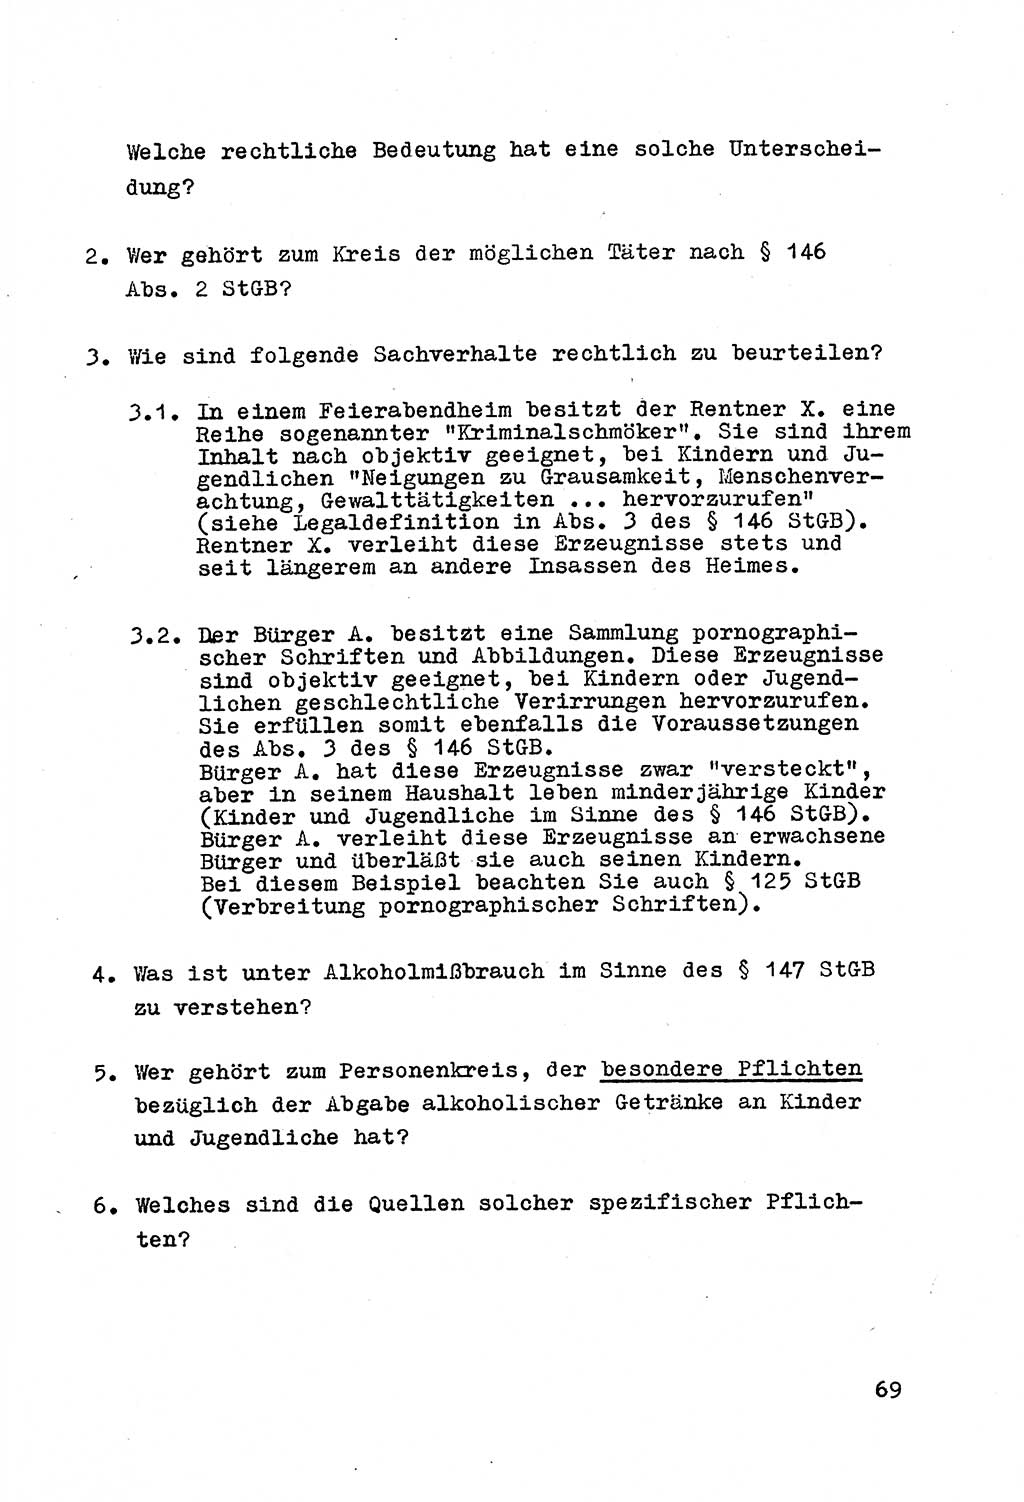 Strafrecht der DDR (Deutsche Demokratische Republik), Besonderer Teil, Lehrmaterial, Heft 4 1969, Seite 69 (Strafr. DDR BT Lehrmat. H. 4 1969, S. 69)